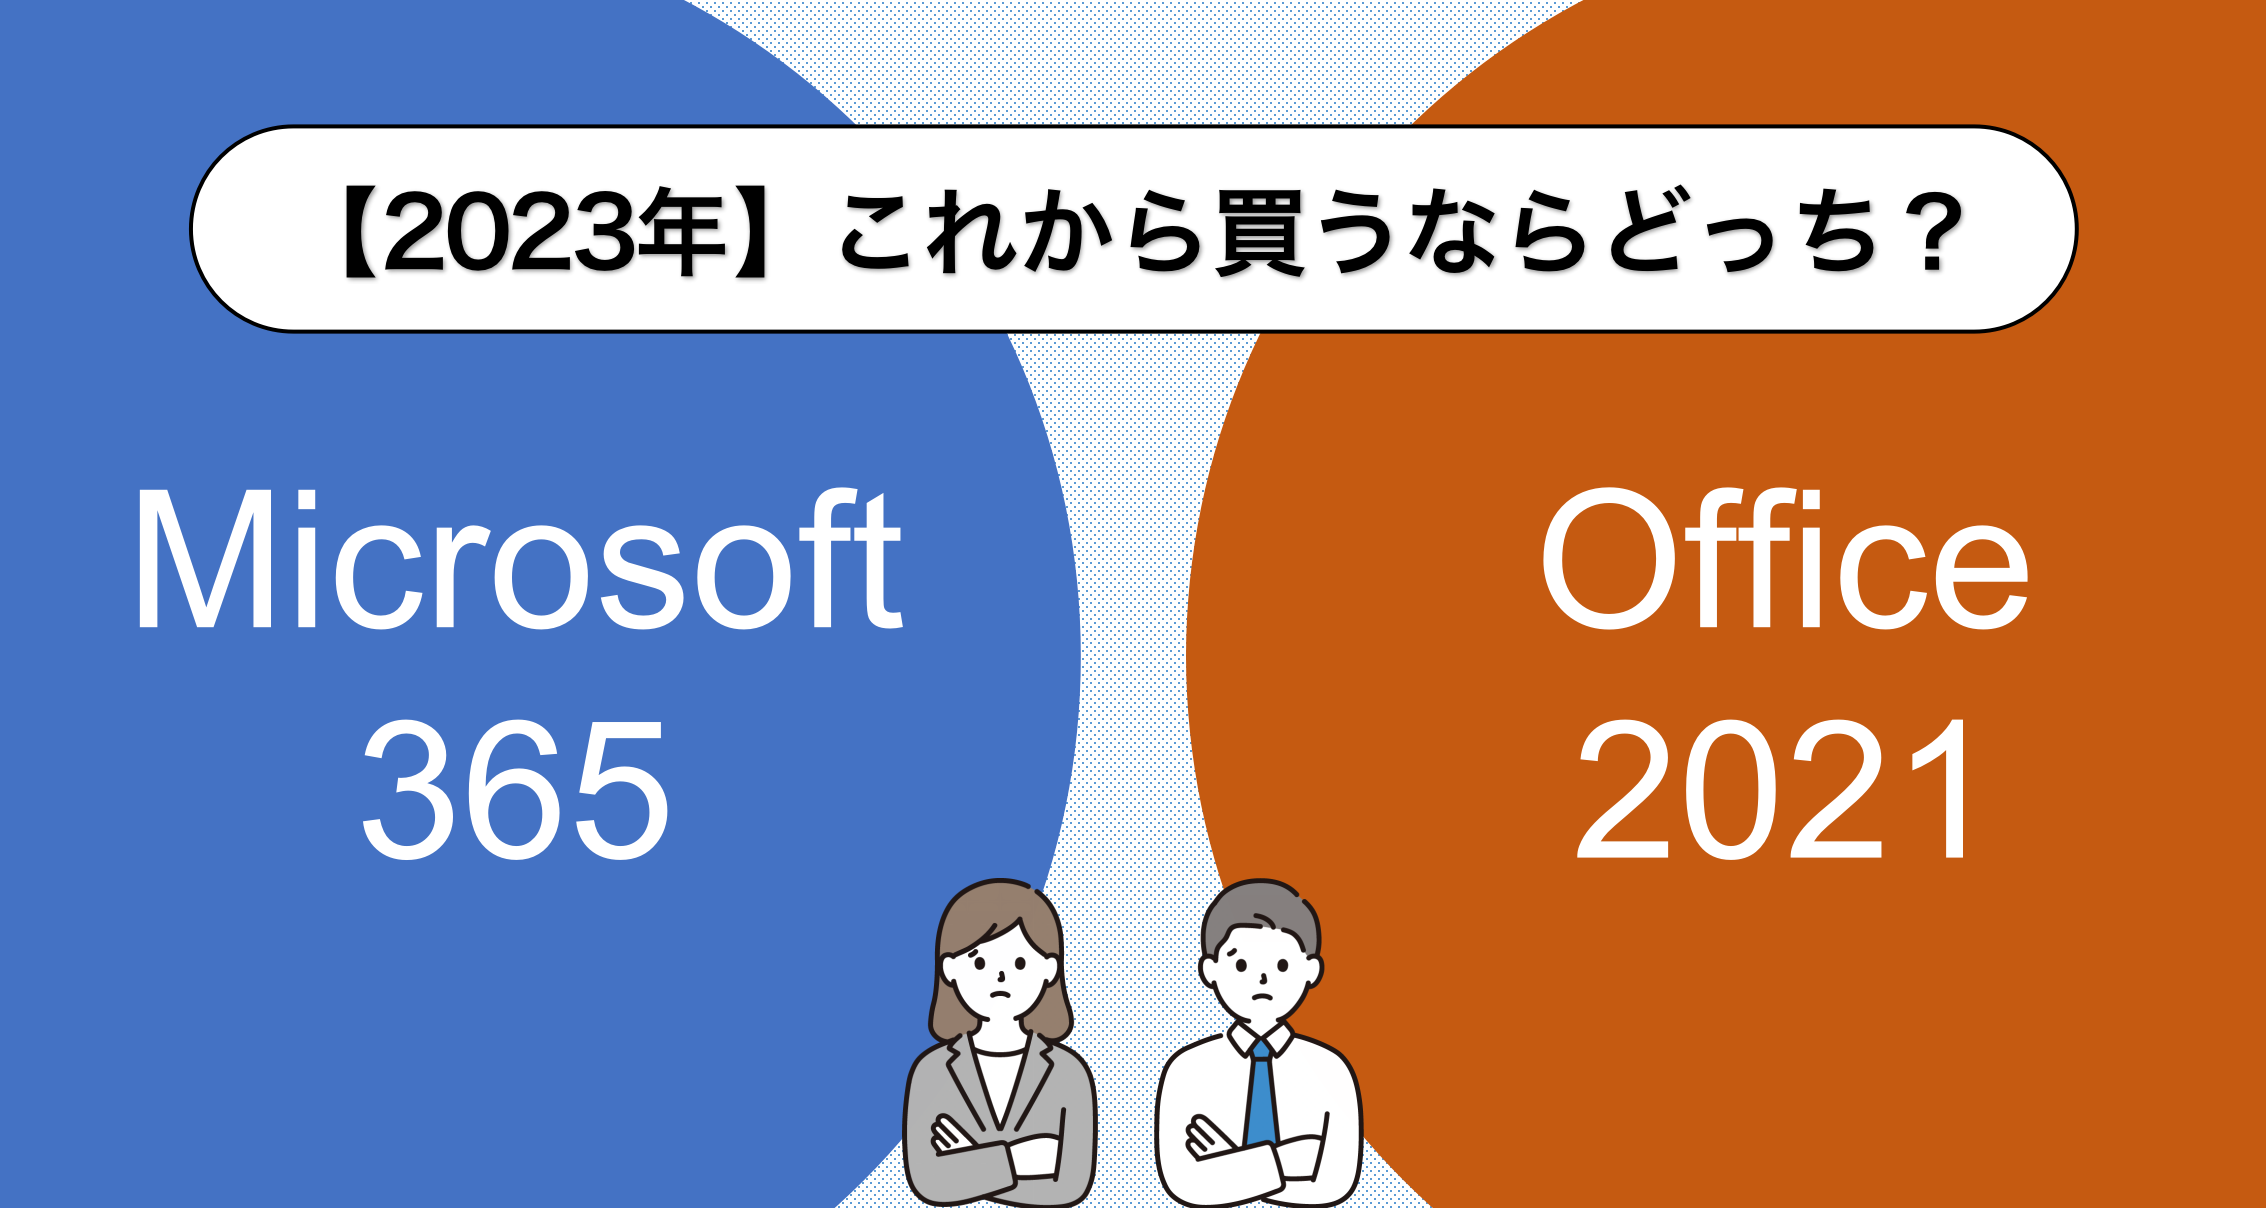 2023年】Microsoft 365とOffice 2021、いま買うならどっちが